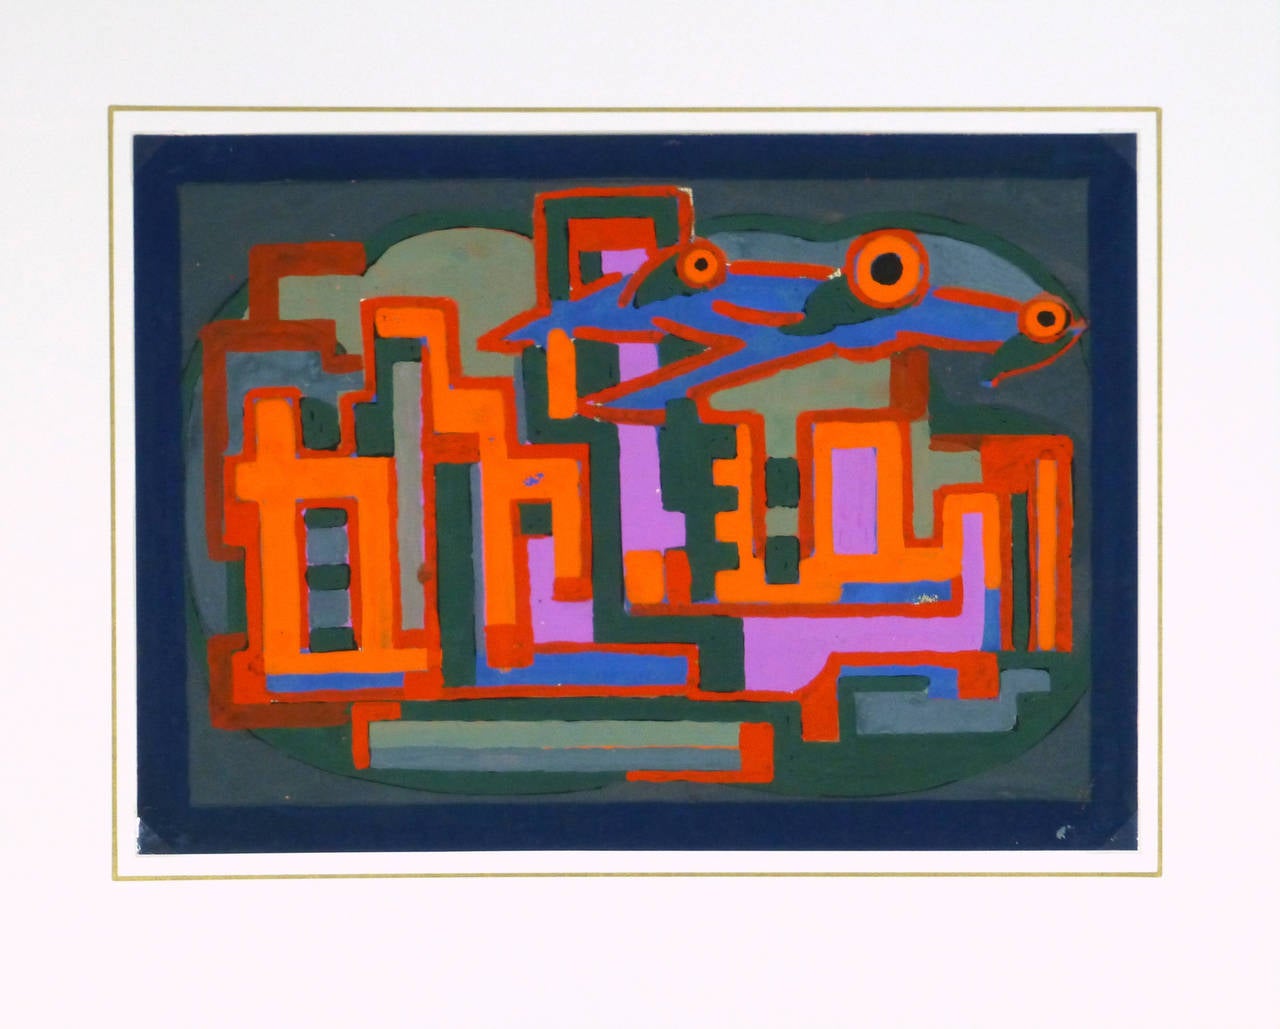 Französisches Gouache-Gemälde, um 1930. Dieses abstrakte Werk besticht durch seine leuchtenden Farben und die scharfen, miteinander verbundenen geometrischen Formen. 

Einzigartiges Originalkunstwerk auf Papier, das auf einer weißen Matte mit